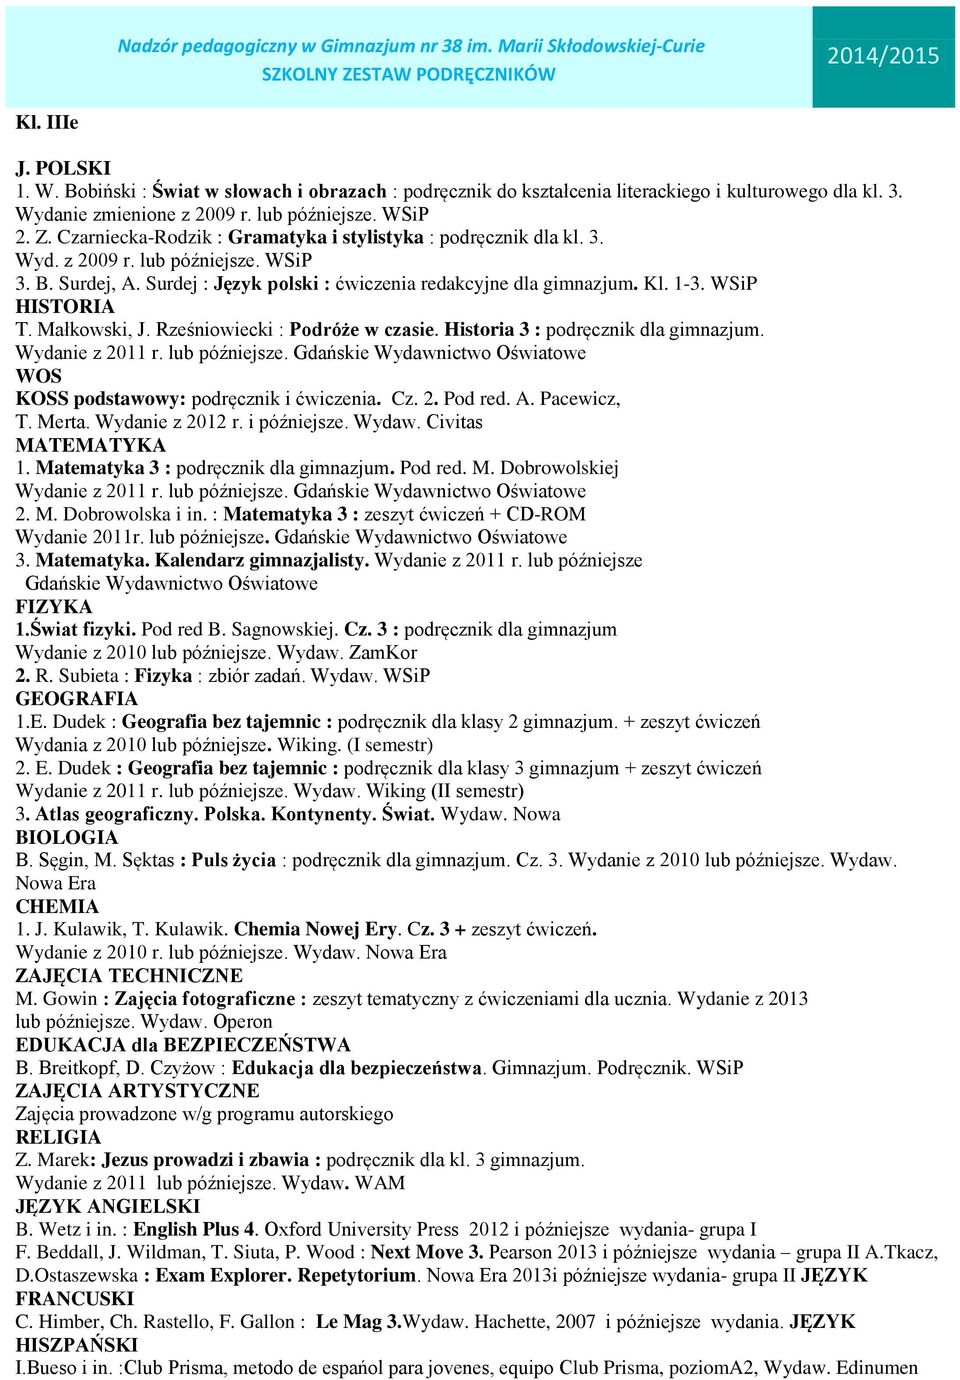 Pearson 2013 i późniejsze wydania grupa II A.Tkacz, D.Ostaszewska : Exam Explorer. Repetytorium. 2013i późniejsze wydania- grupa II JĘZYK FRANCUSKI C. Himber, Ch. Rastello, F. Gallon : Le Mag 3.Wydaw.